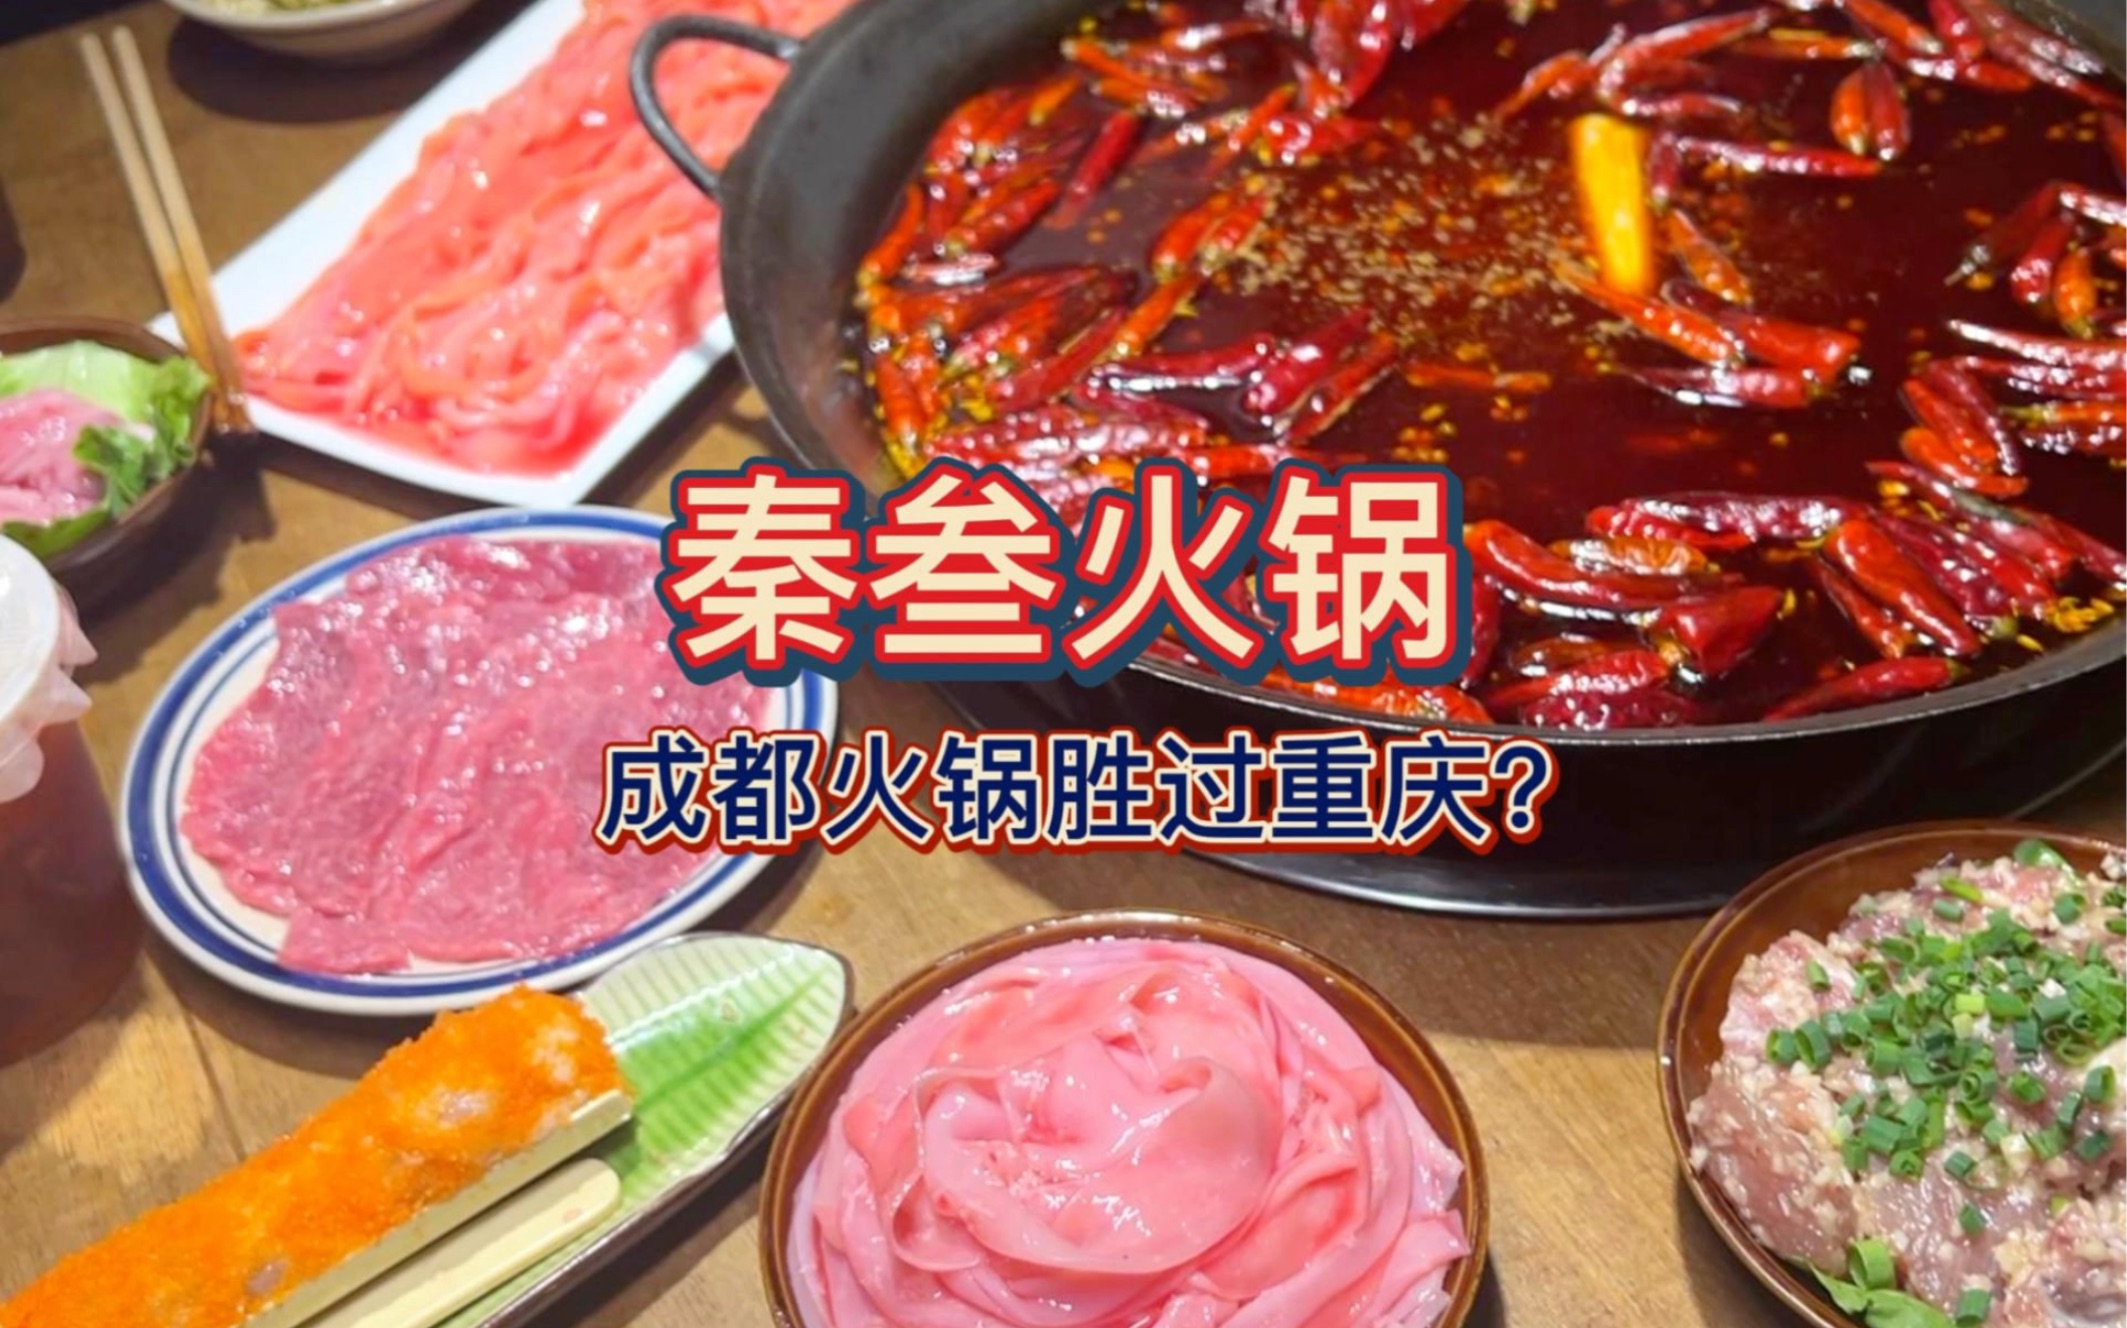 在成都吃地道的重庆火锅是怎样体验  干饭三健客勇闯成都